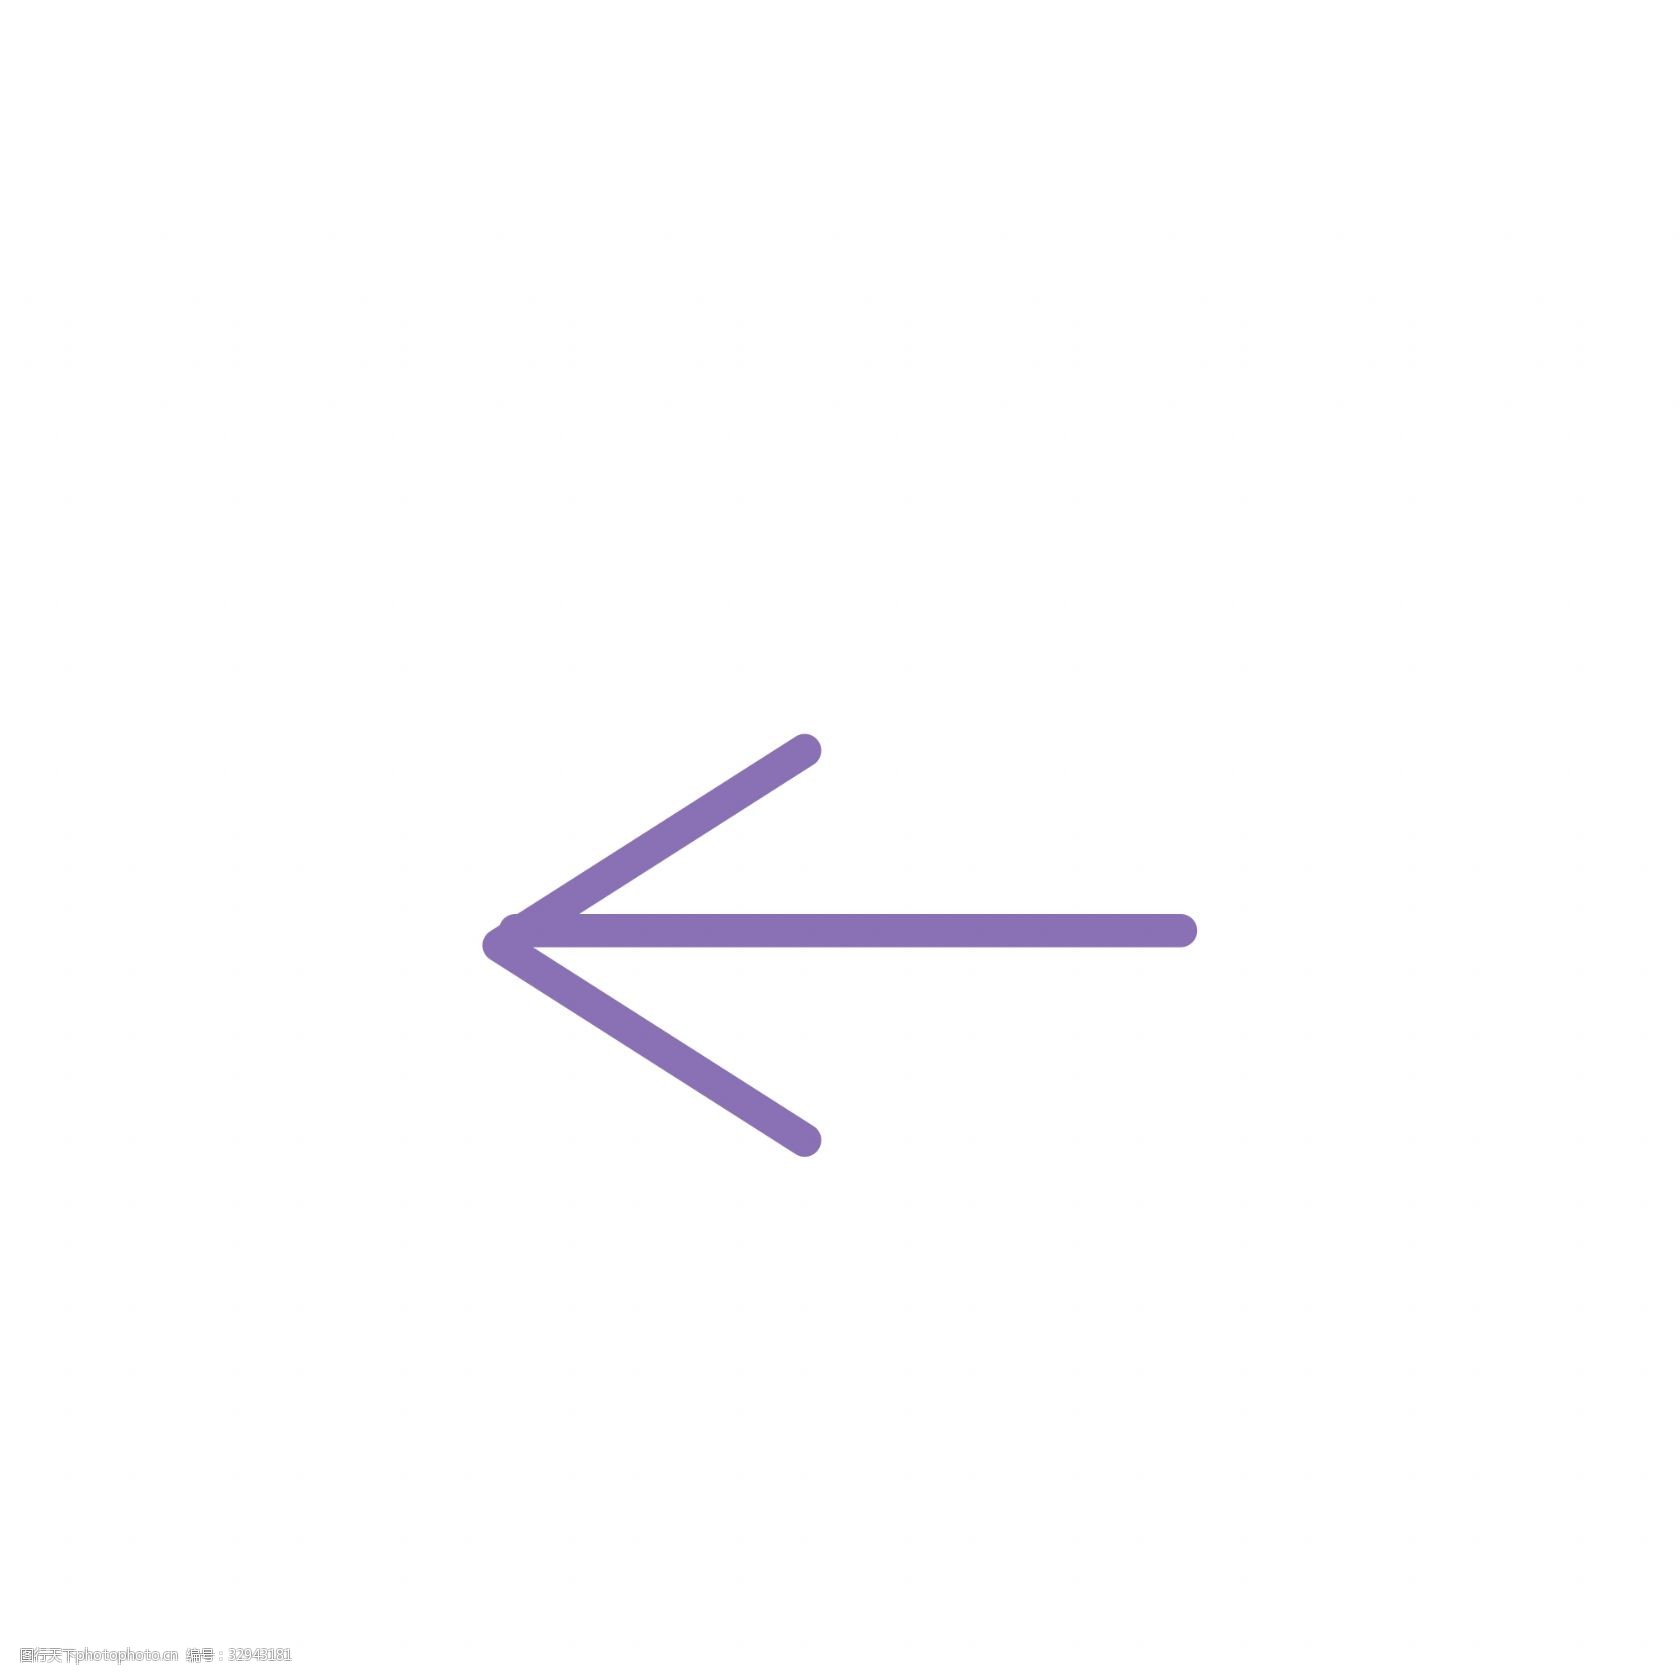 关键词:向左的箭头免抠图 指引箭头 指引图标 卡通箭头号 指引符号 ui